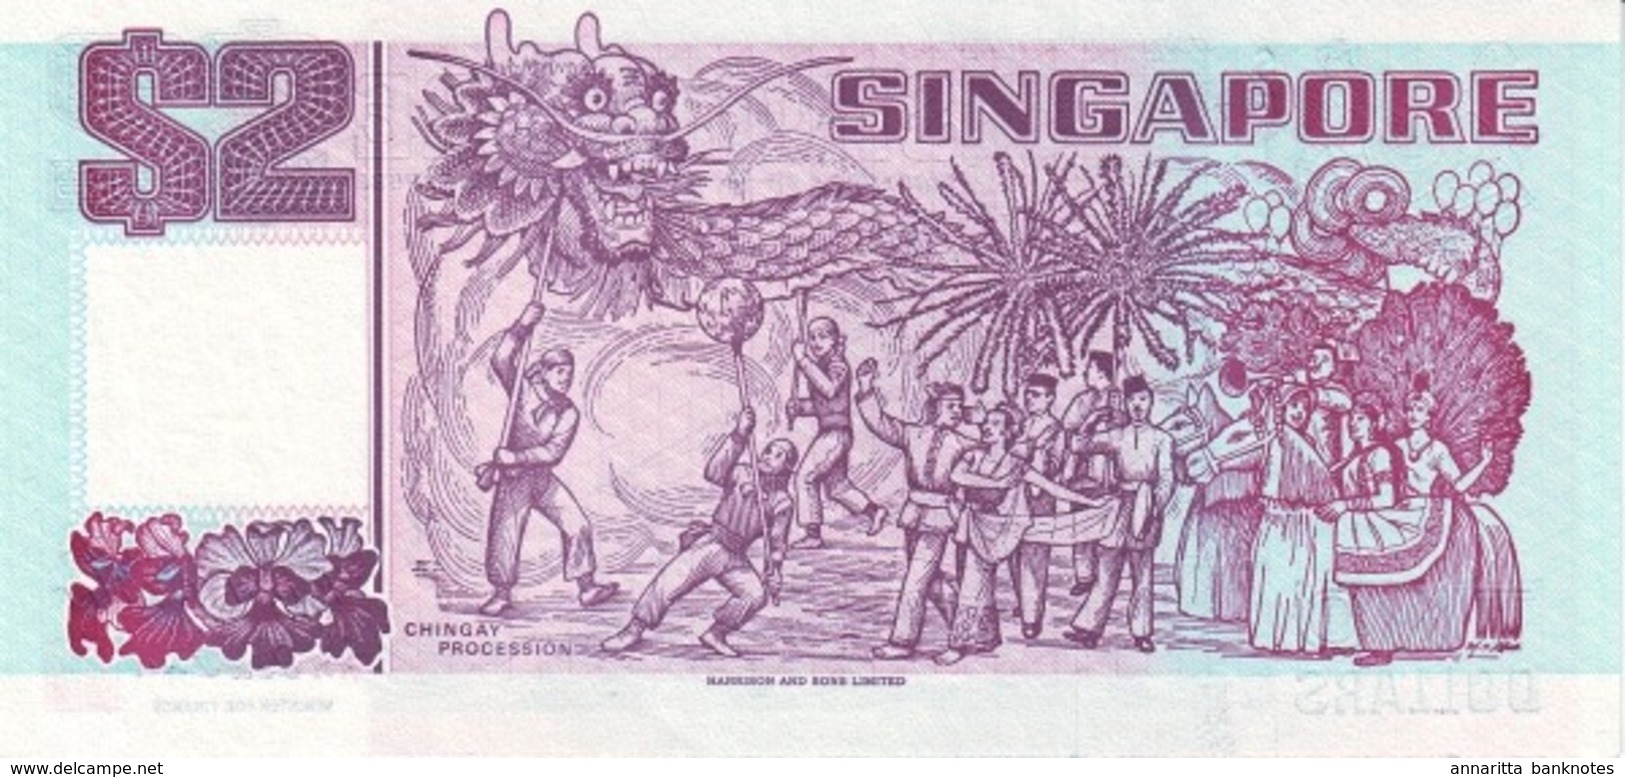 Singapore 2 Dollars ND (1992), UNC, P-28a, SG B129a - Singapur